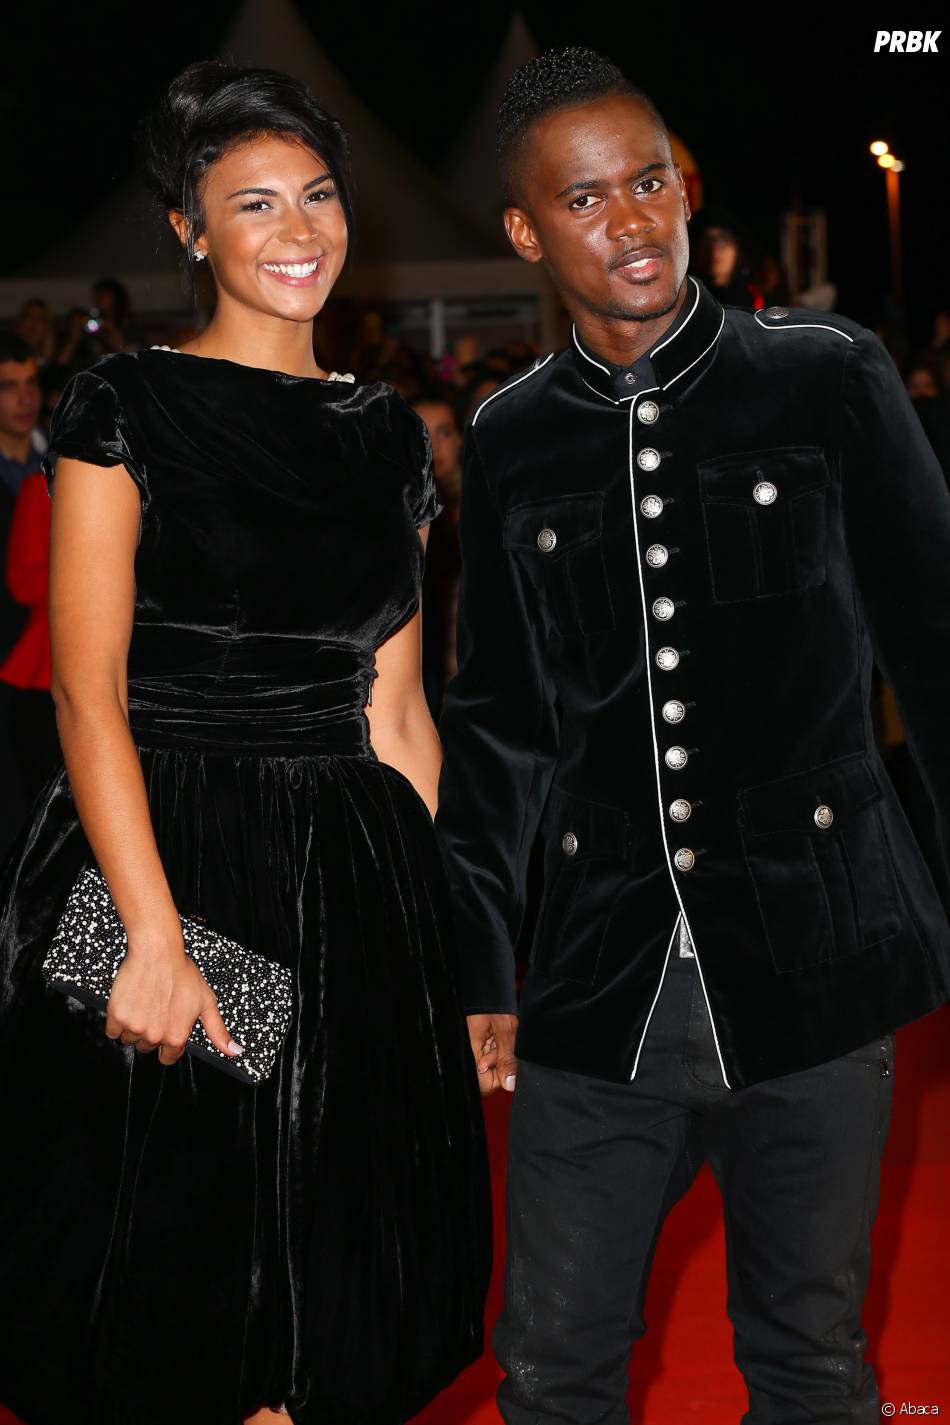  Black M et sa femme main dans la main aux NRJ Music Awards, le 13 d&amp;eacute;cembre 2014 &amp;agrave; Cannes 